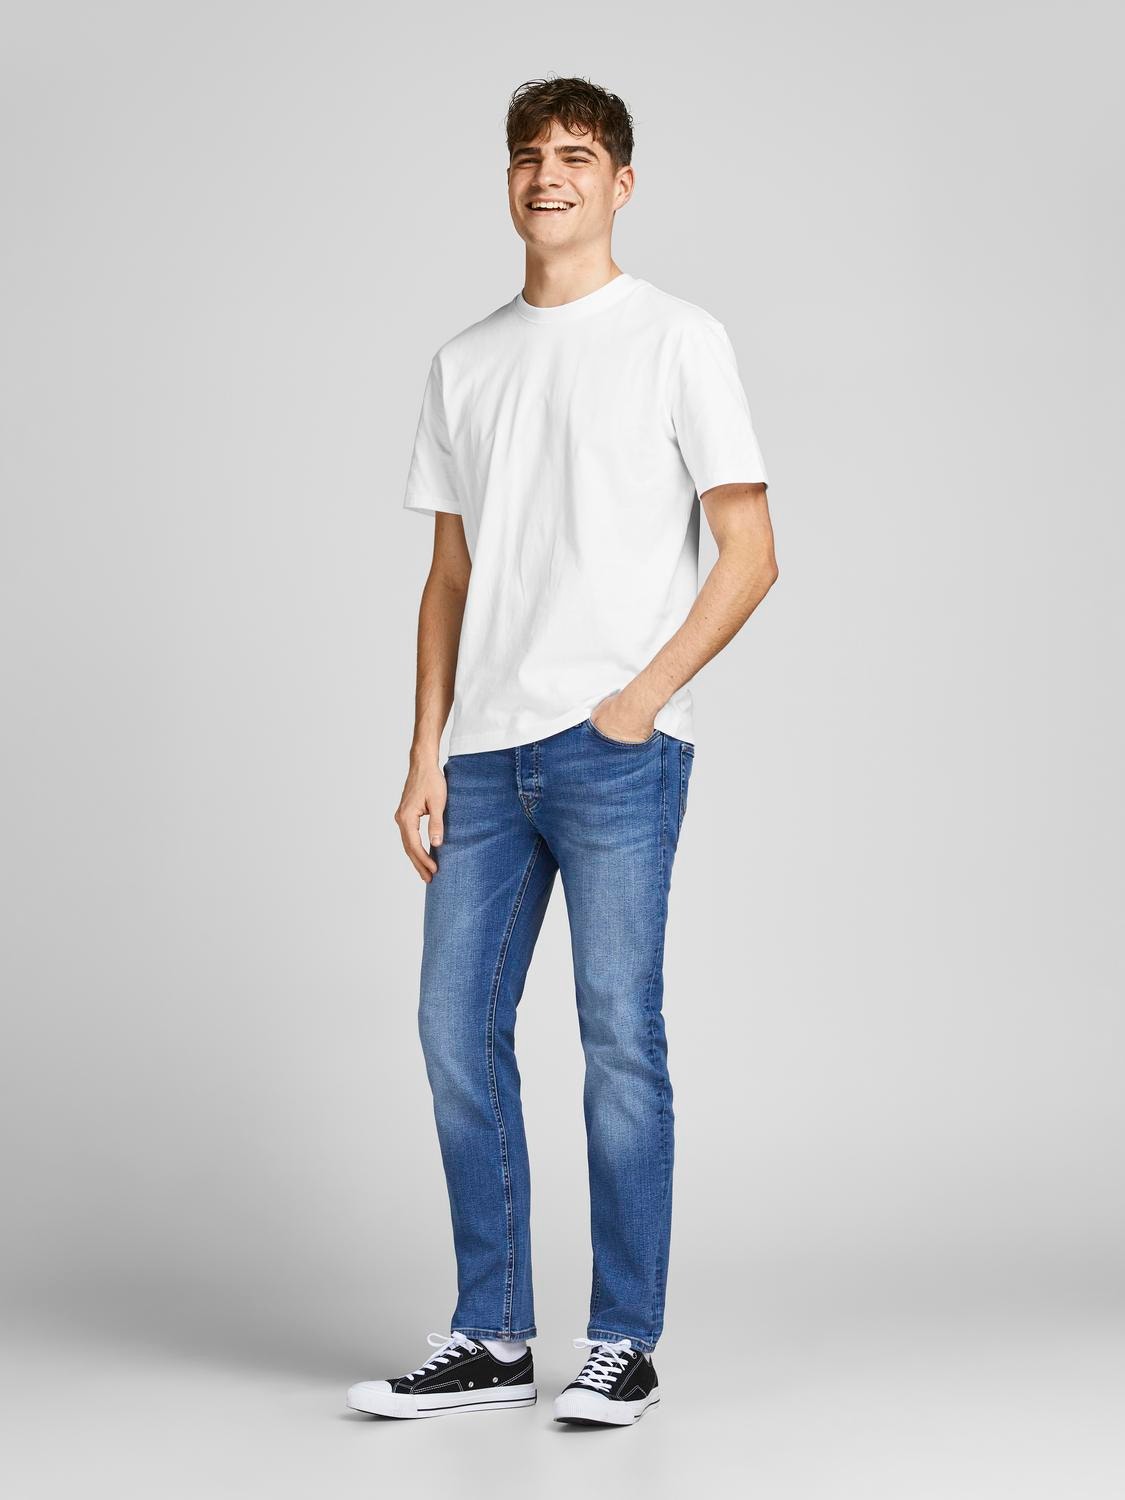 Jack & Jones Plain O-Neck T-shirt -White - 12190467